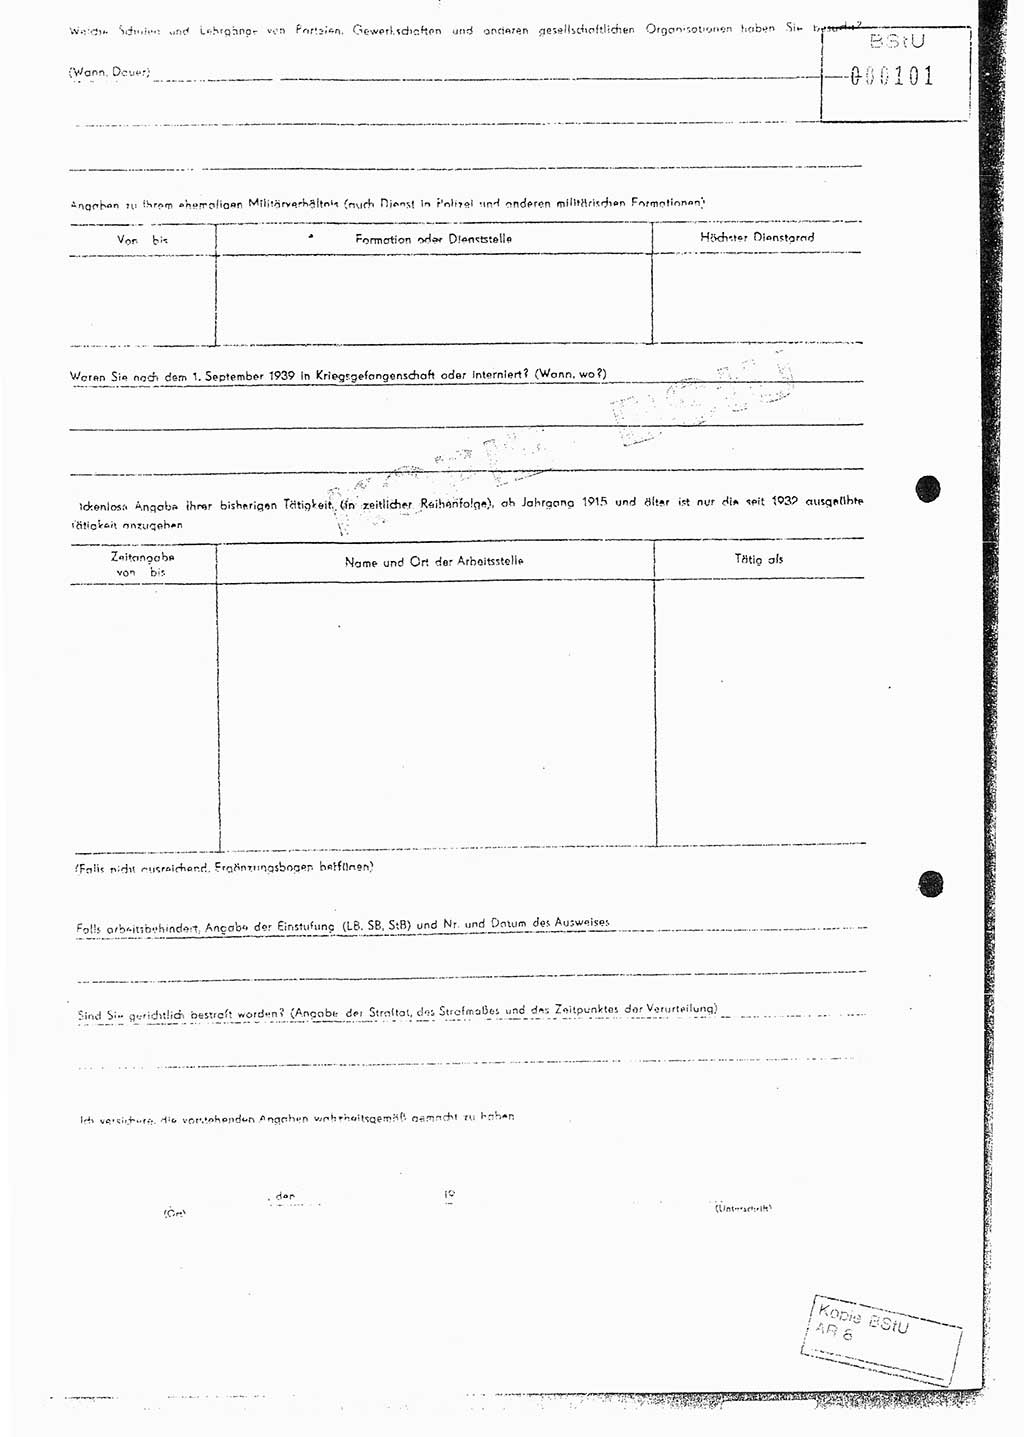 Diplomarbeit Hauptmann Joachim Klaumünzner (Abt. ⅩⅣ), Ministerium für Staatssicherheit (MfS) [Deutsche Demokratische Republik (DDR)], Juristische Hochschule (JHS), Vertrauliche Verschlußsache (VVS) o001-353/80, Potsdam 1980, Blatt 92/1 (Dipl.-Arb. MfS DDR JHS VVS o001-353/80 1980, Bl. 92/1)